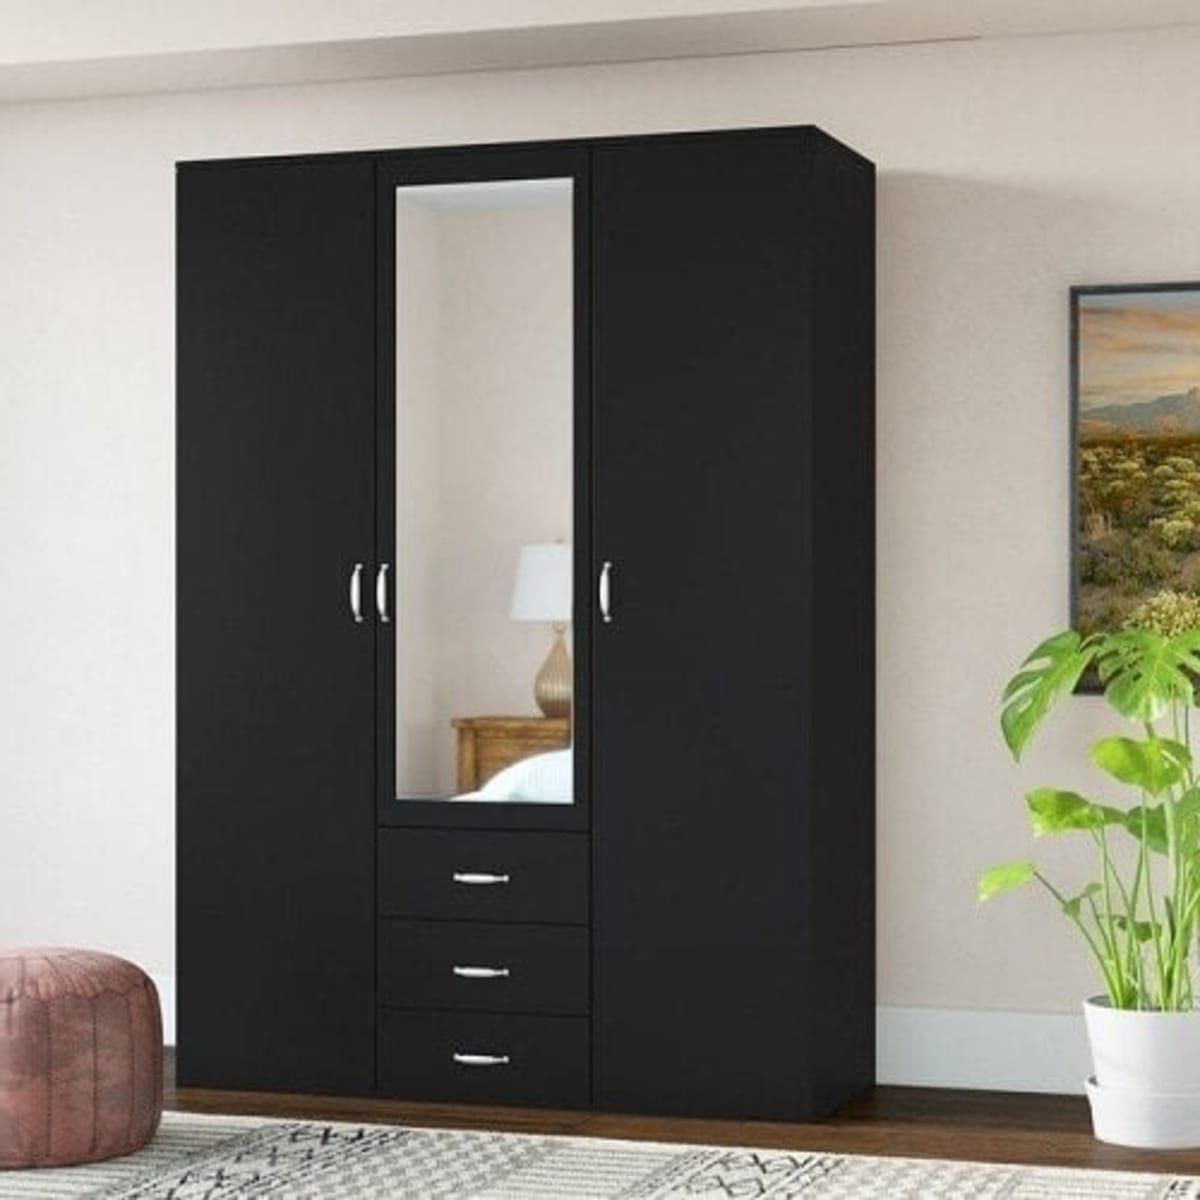 Beyond 3 Door Wardrobe With 3 Drawer And Mirror Black | Konga Online  Shopping Regarding Black 3 Door Wardrobes (View 2 of 20)